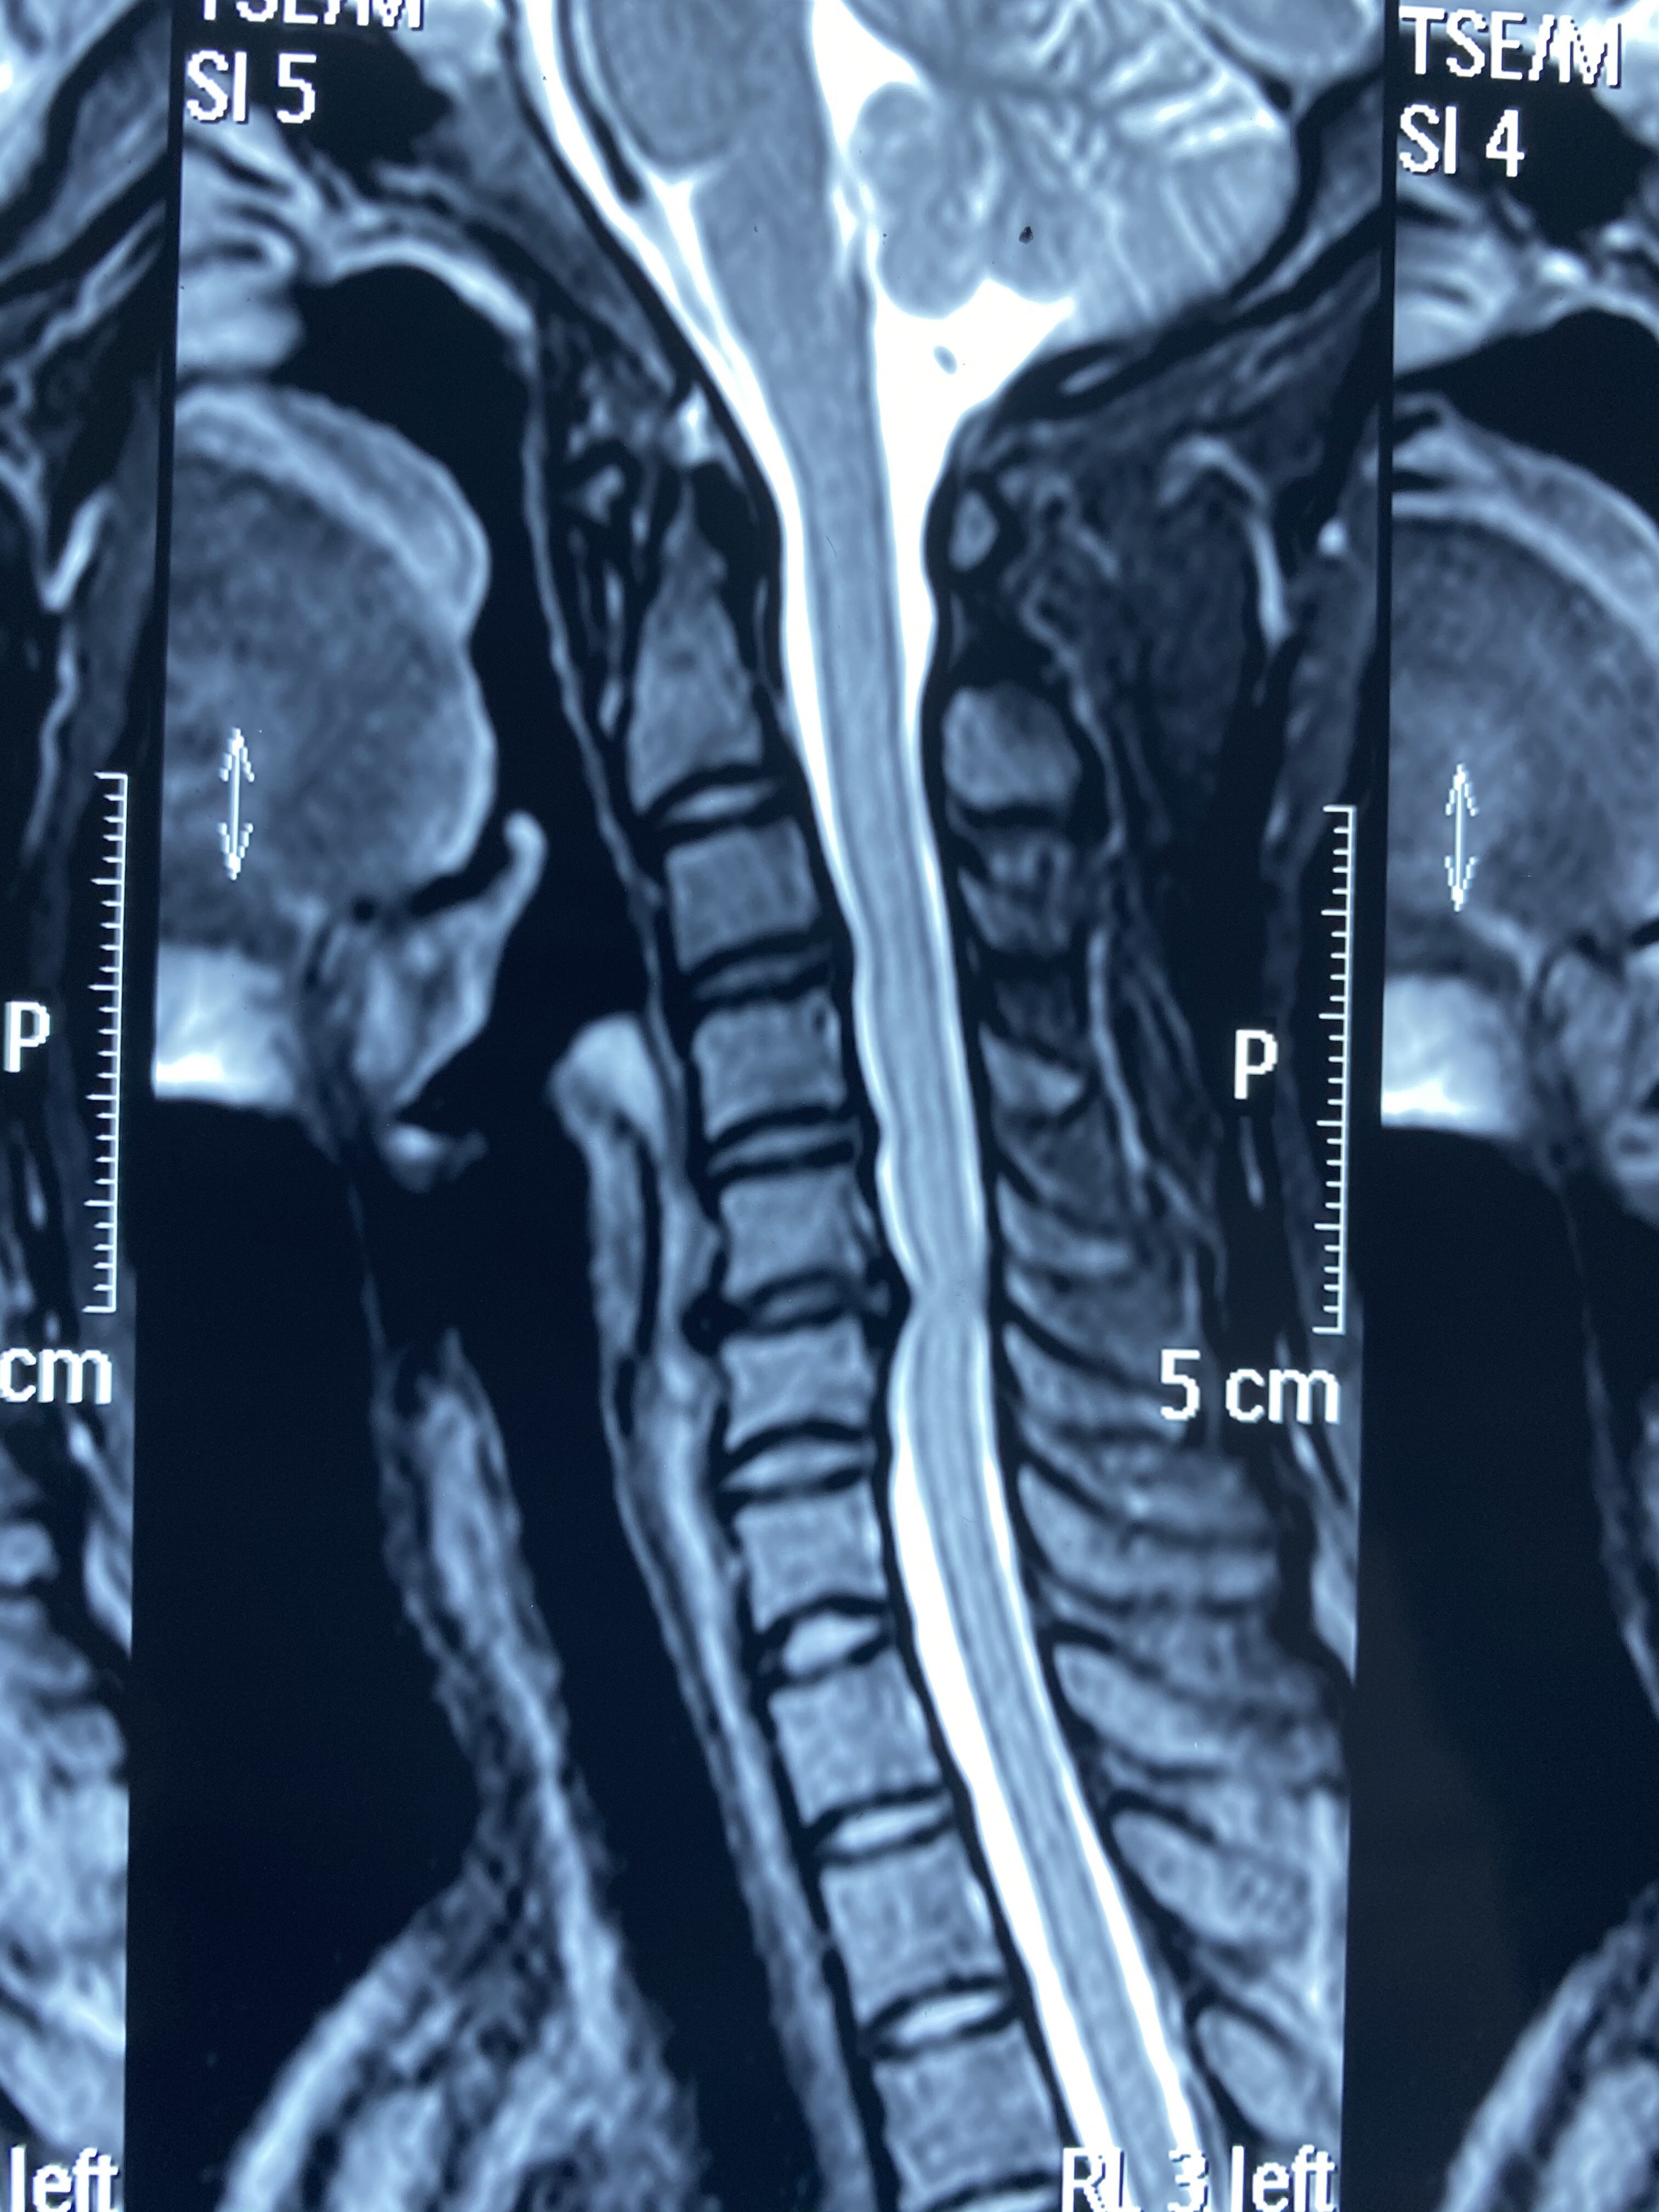 磁共振显示颈椎间盘突出压迫脊髓及硬膜囊